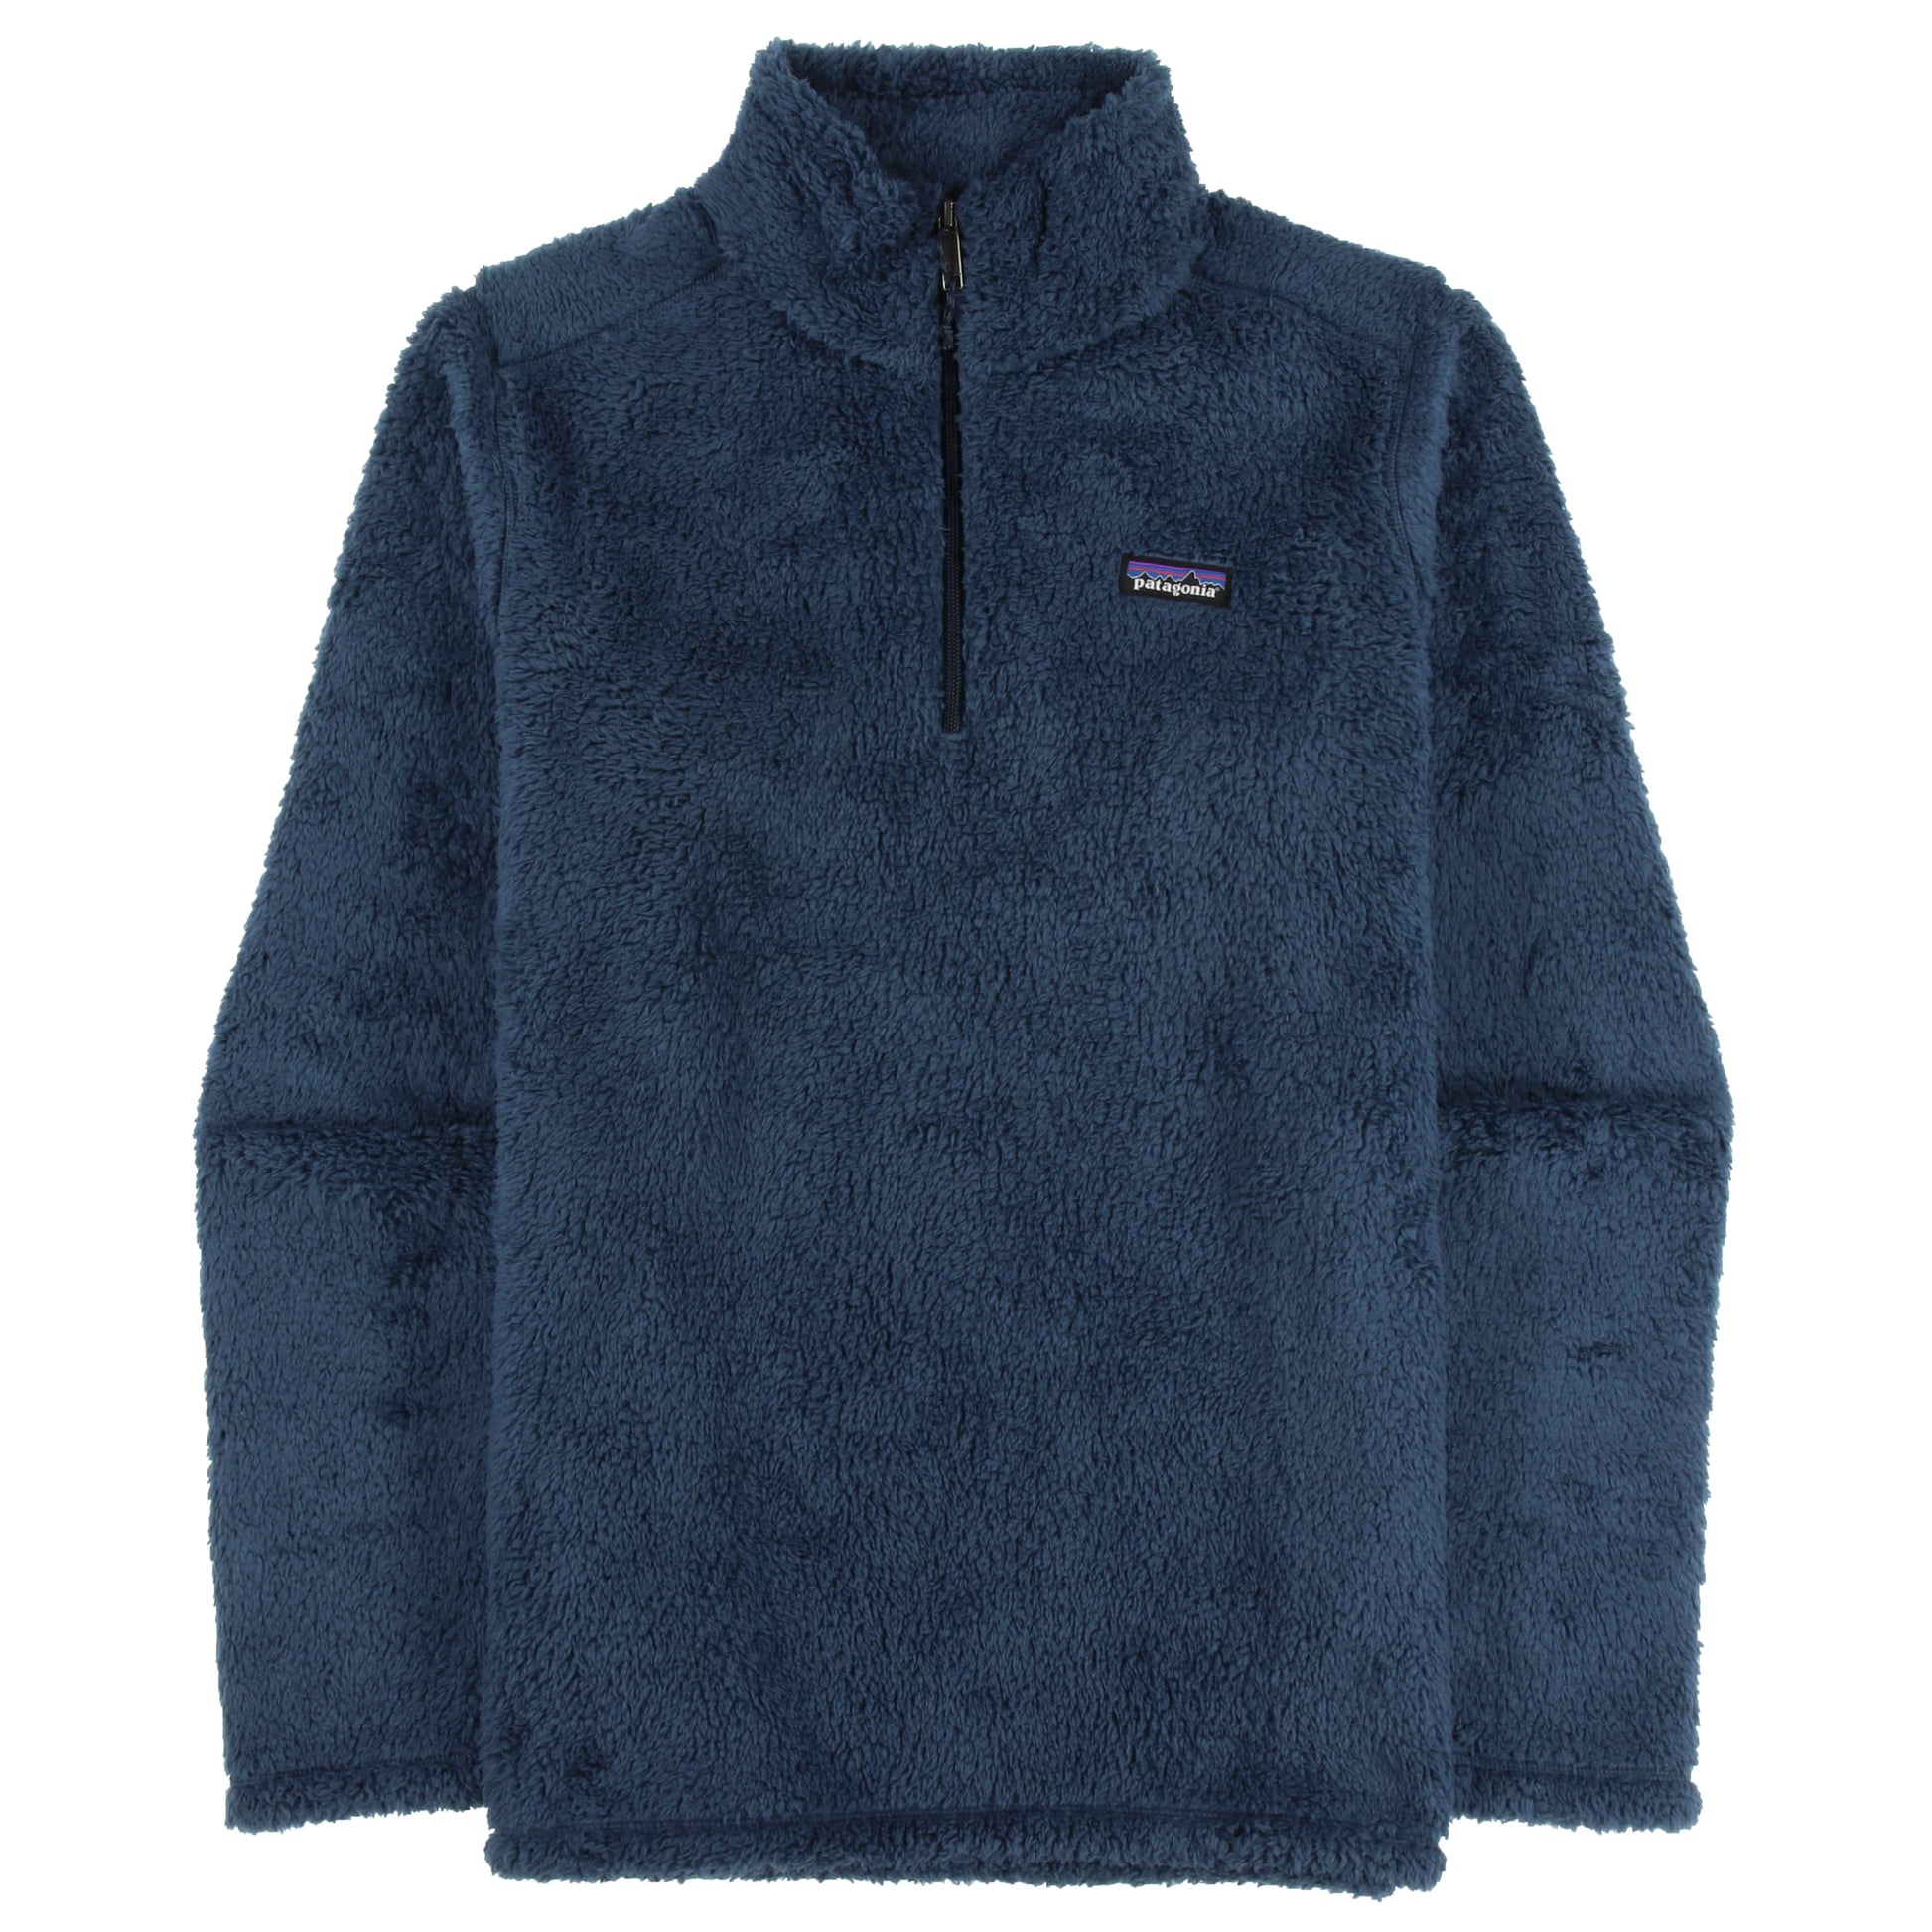 Patagonia Los Gatos Fleece 1/4 Zip Jacket Size Medium